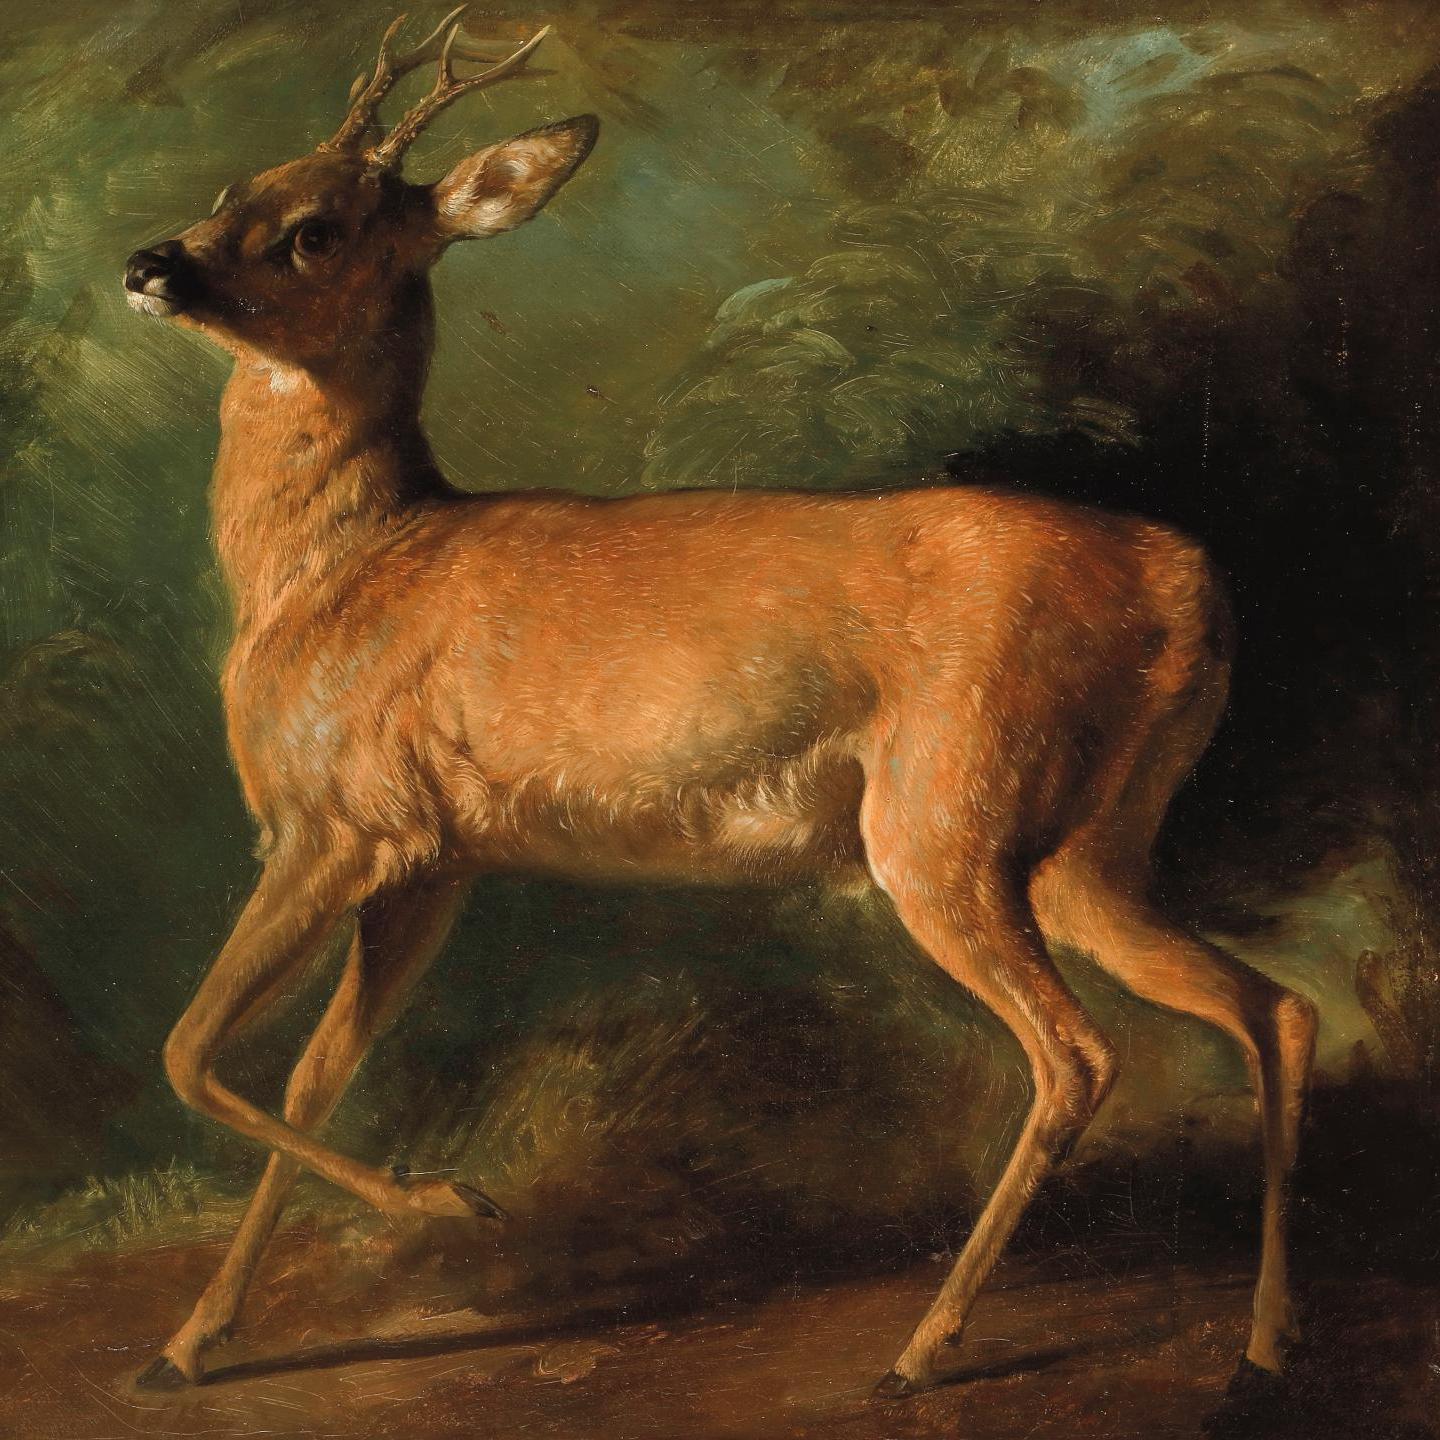 A Young Deer by Raden Saleh  - Pre-sale